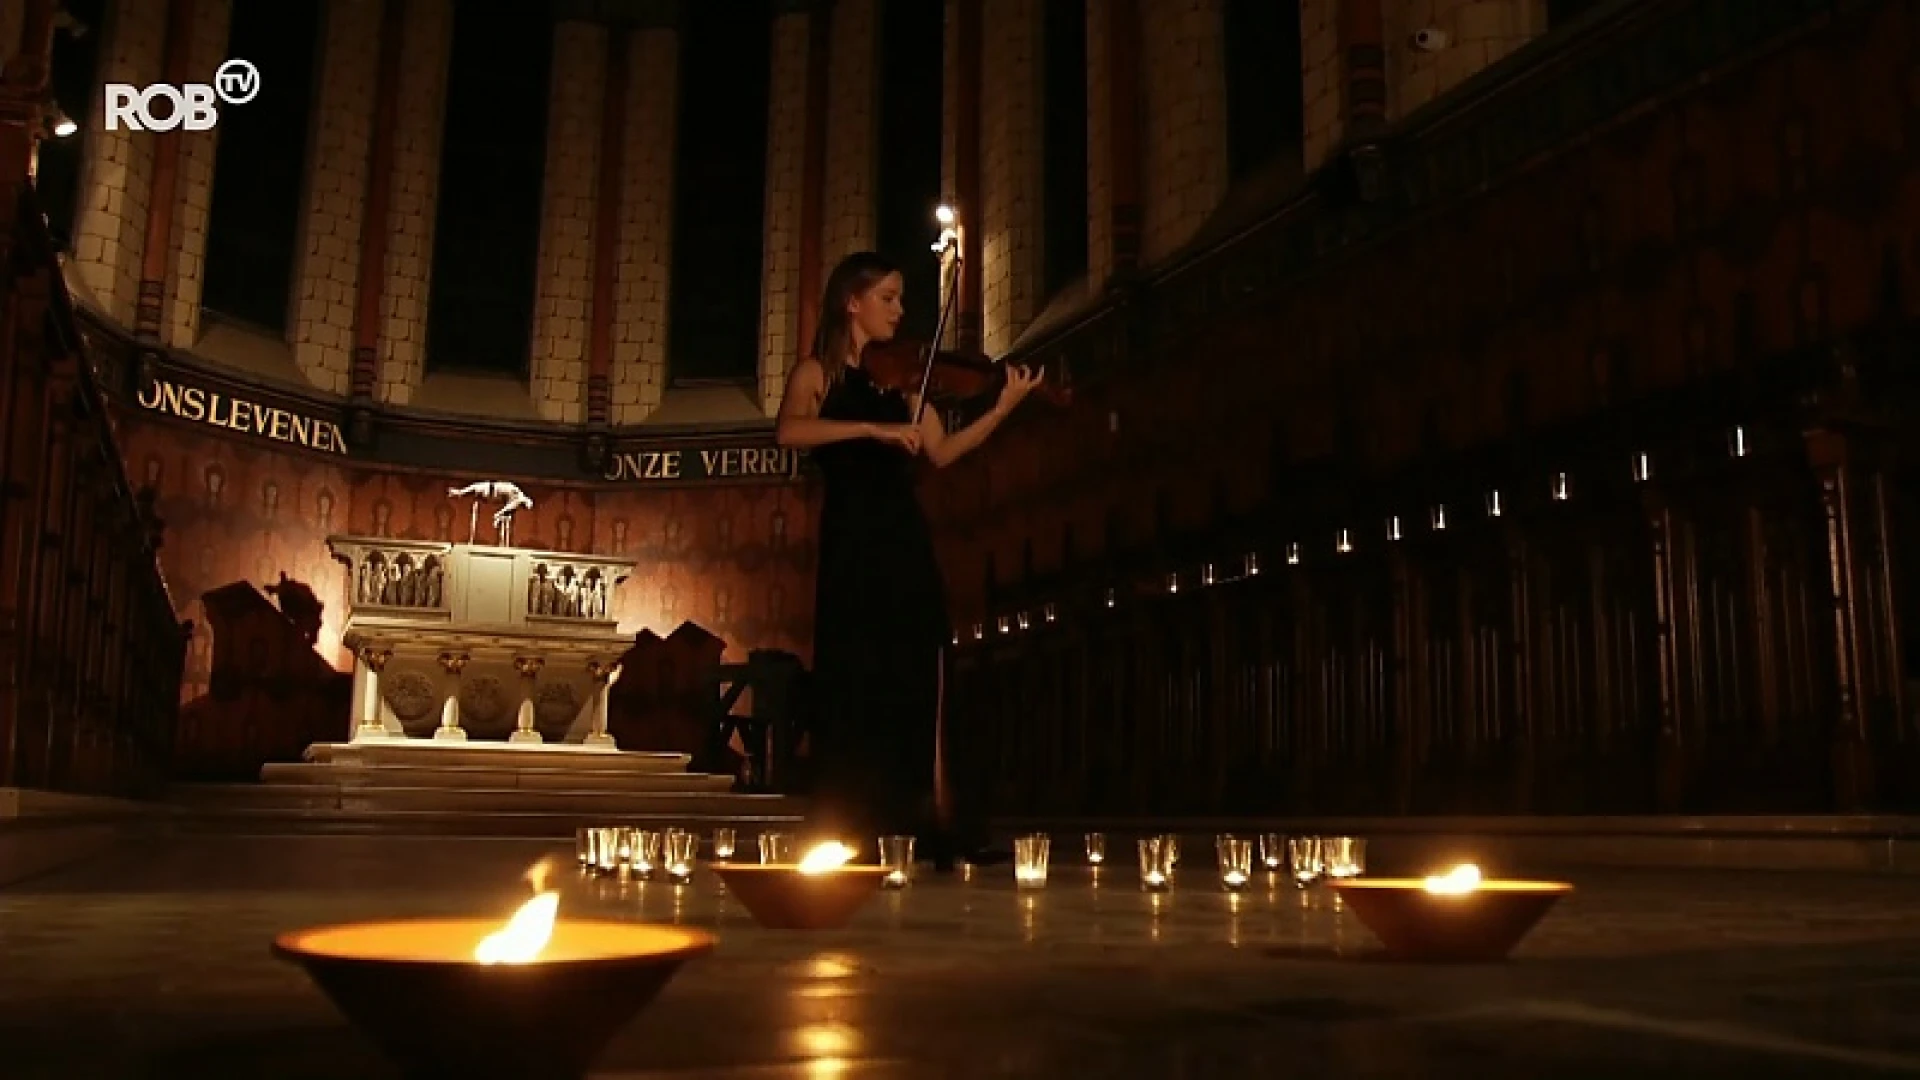 Ontroerend: Clara Evens speelt ontroerend stuk viool in de Gasthuiskapel tijdens St.-Rochusverlichting